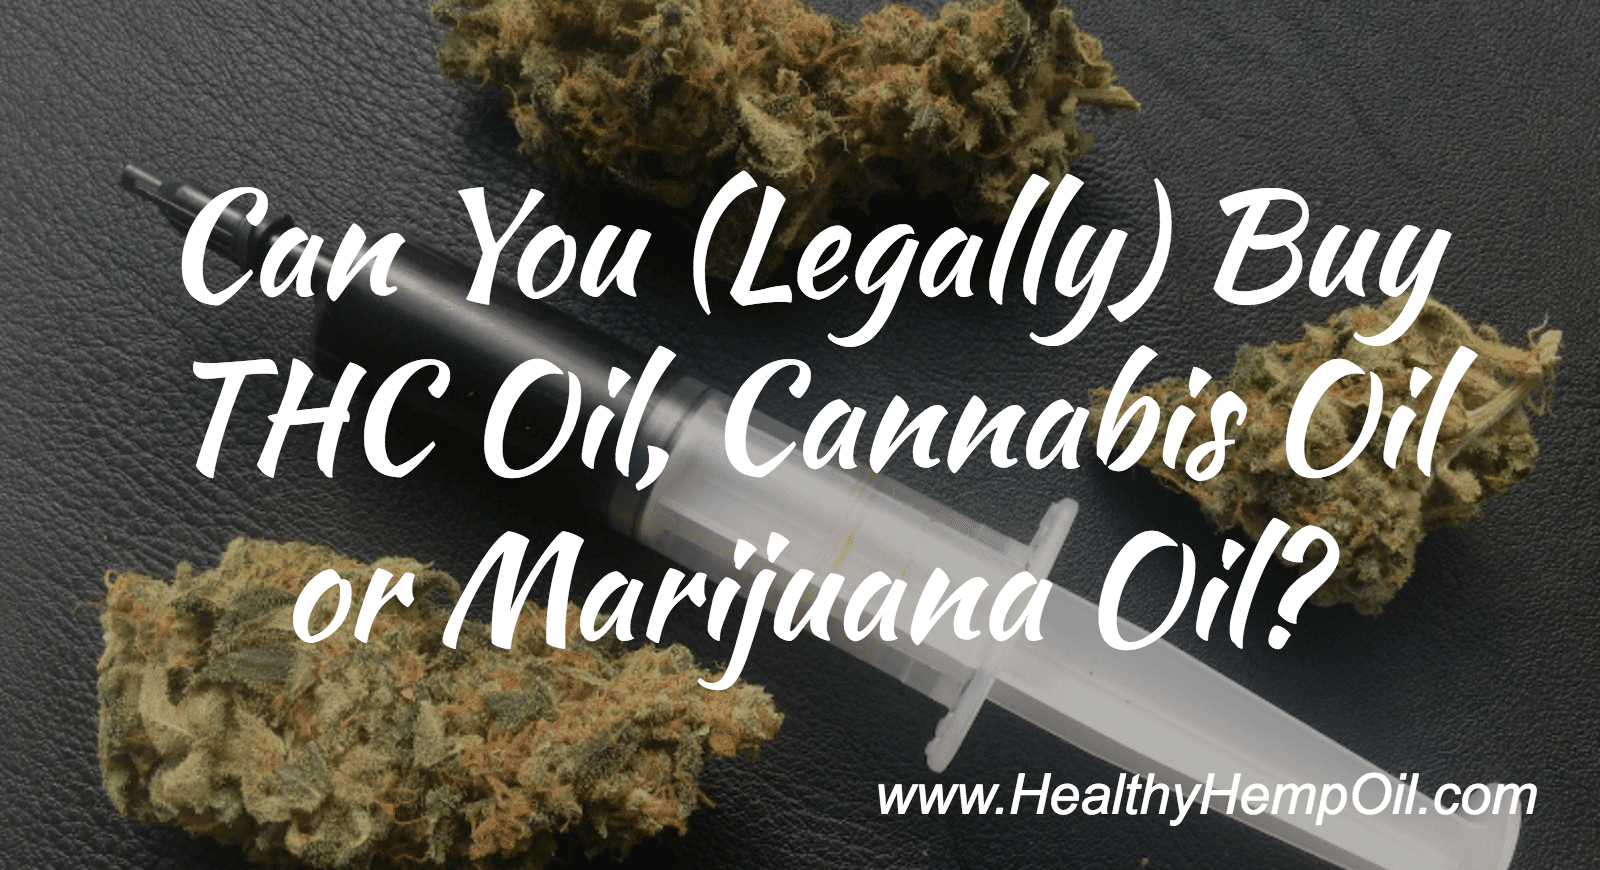 Can You (Legally) Buy THC Oil, Cannabis Oil or Marijuana Oil?